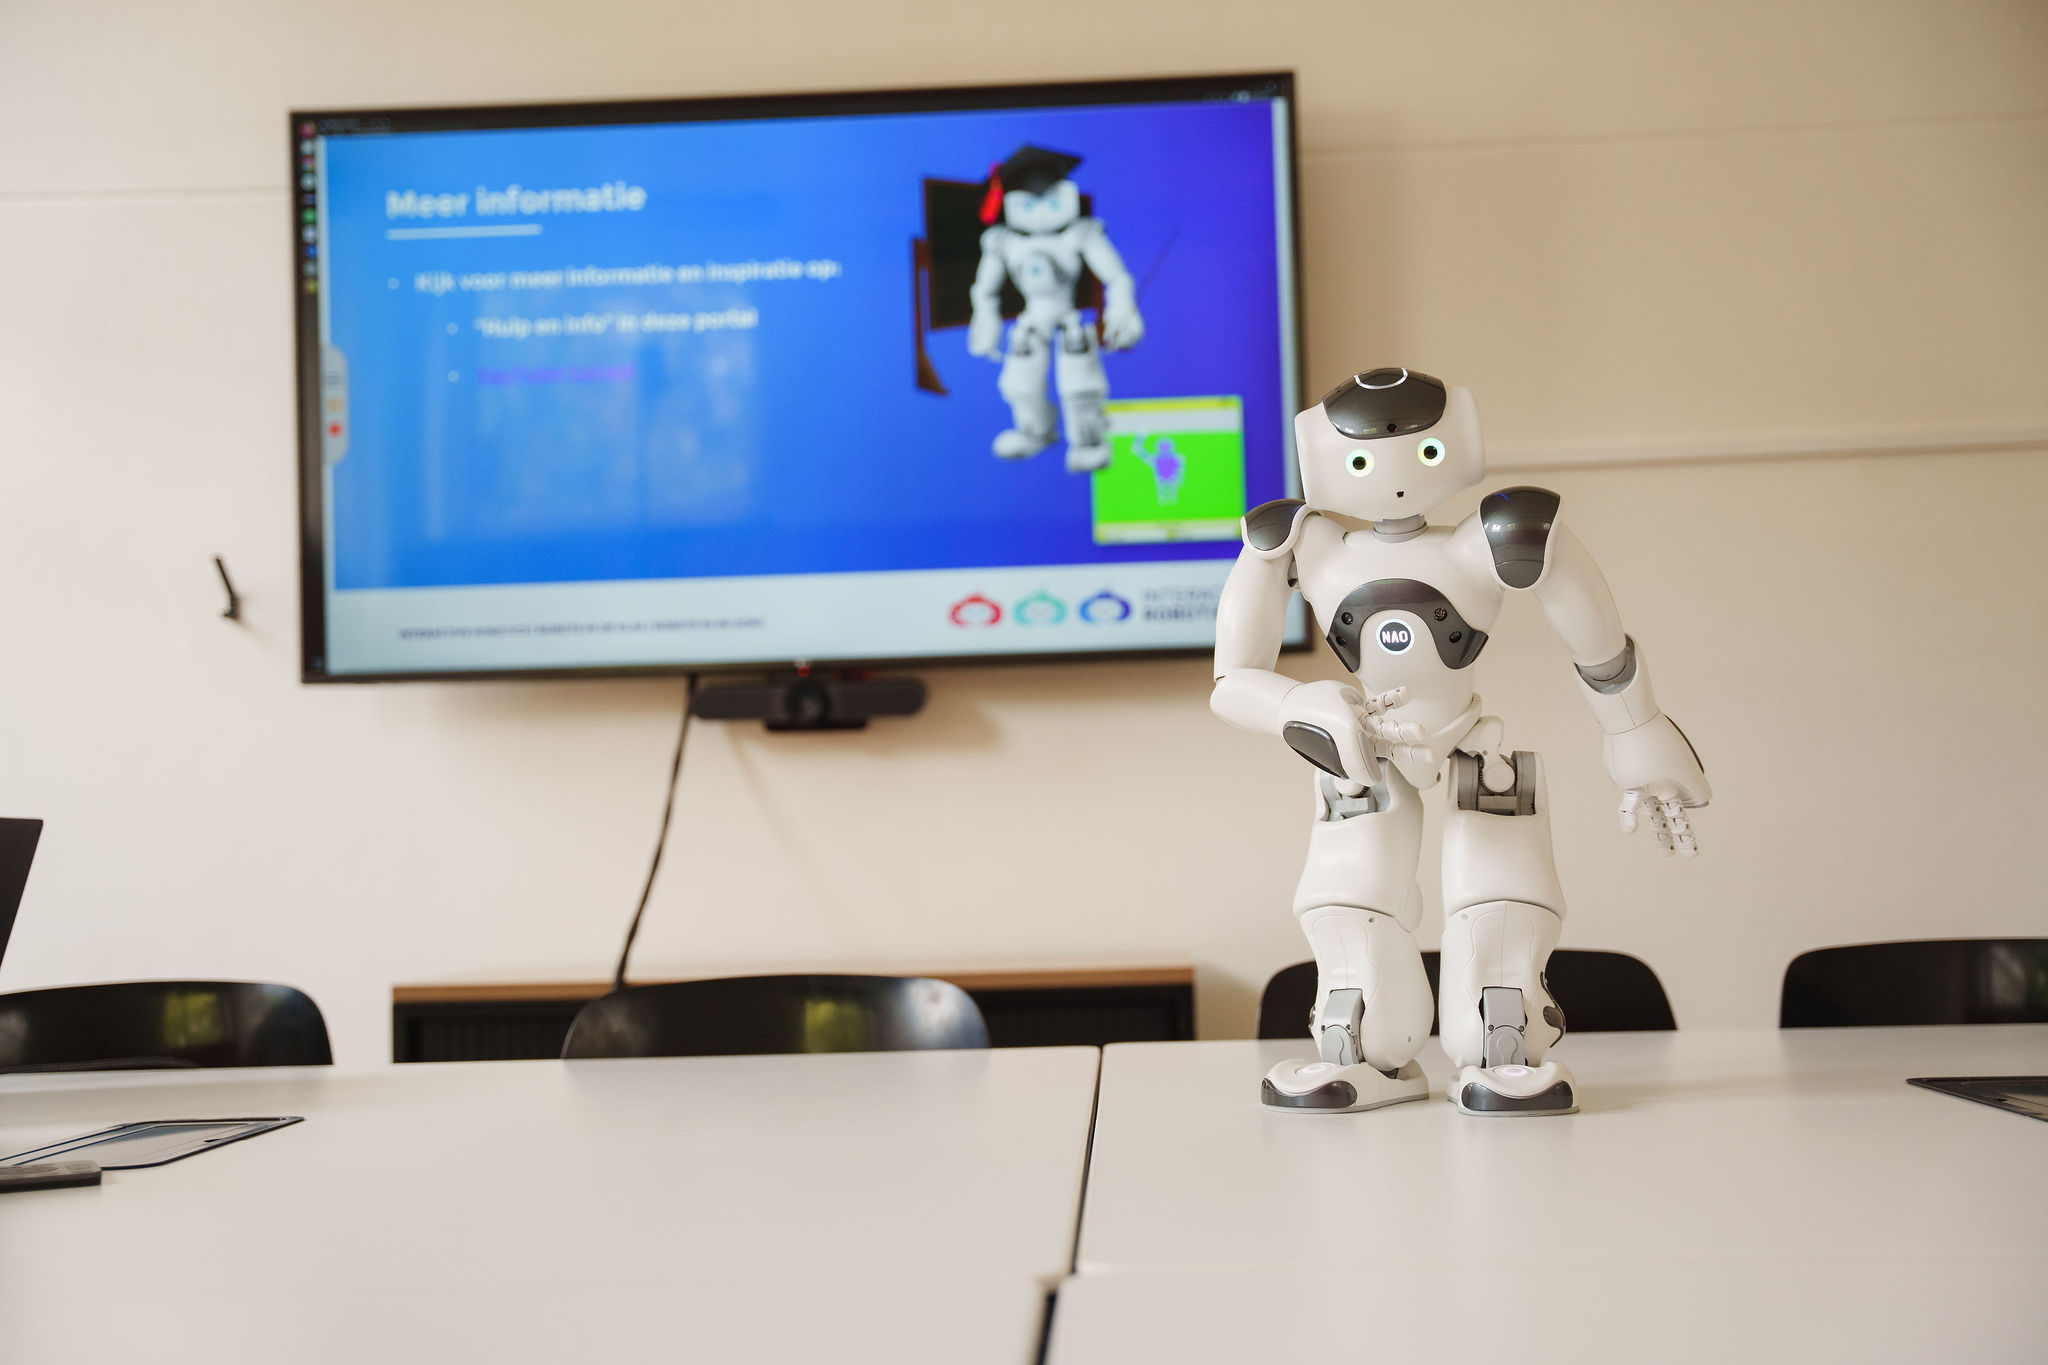 interactieve presentatie geven met sociale robots